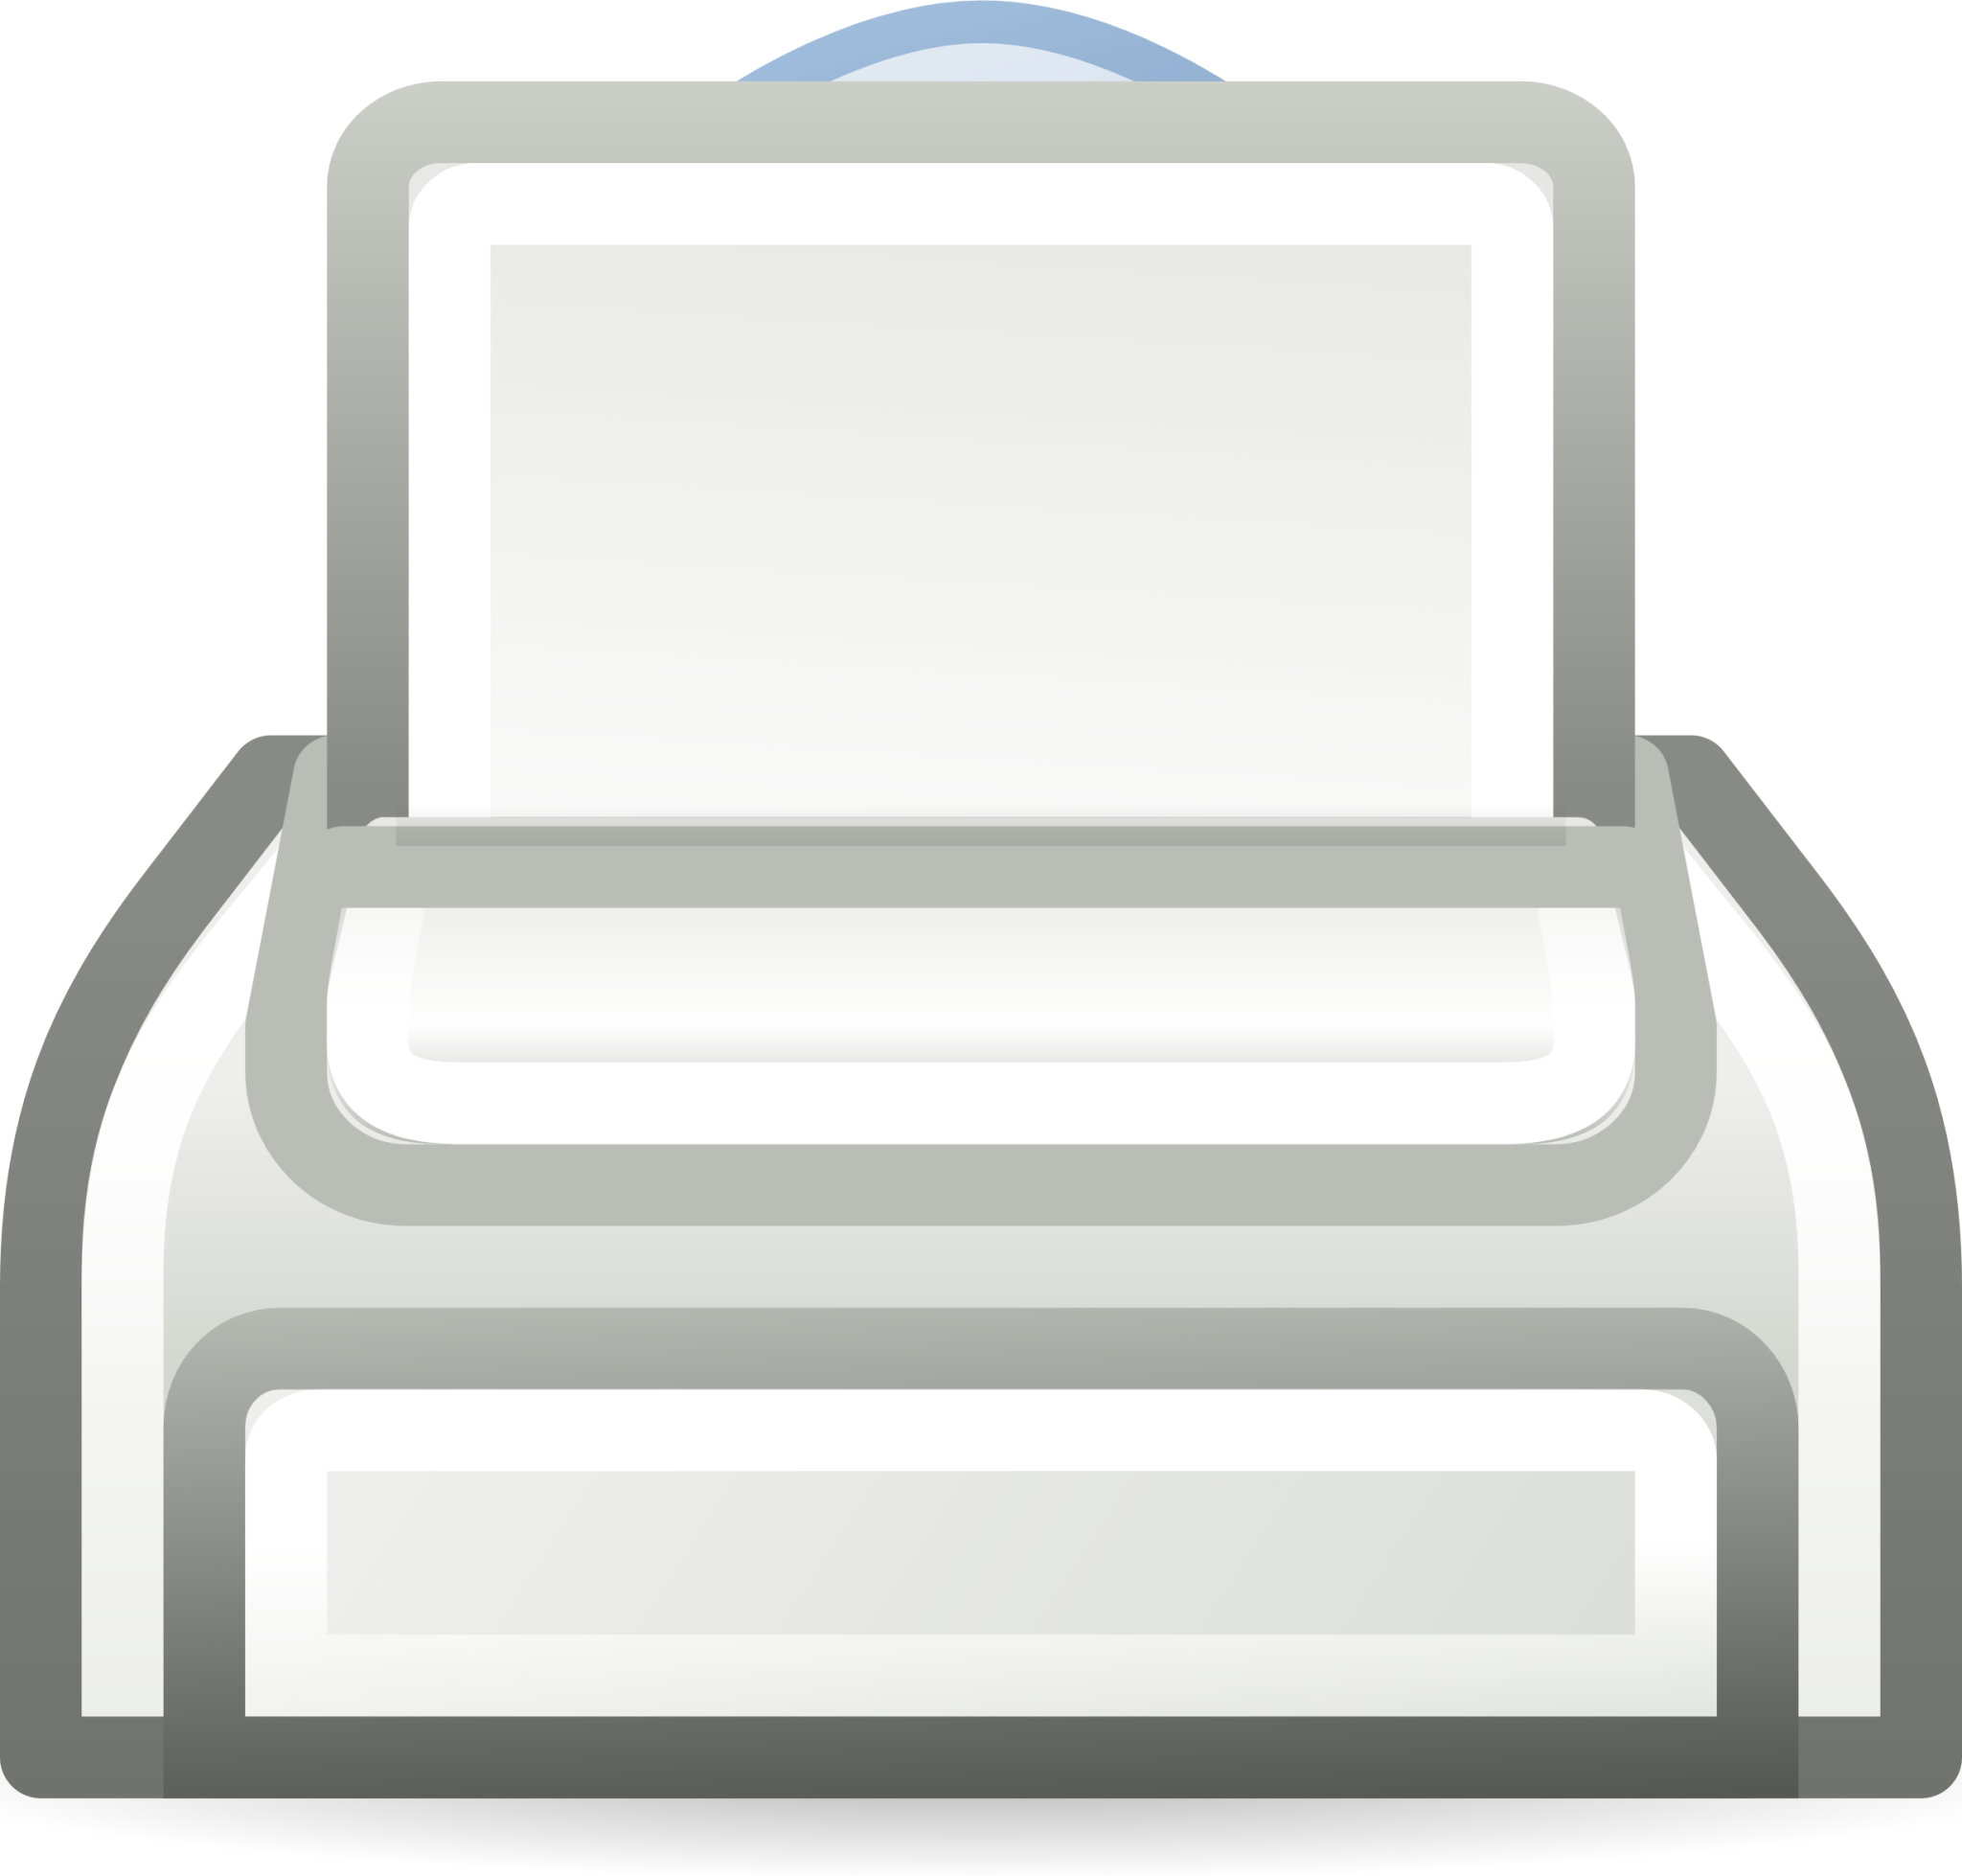 xfce printer icon